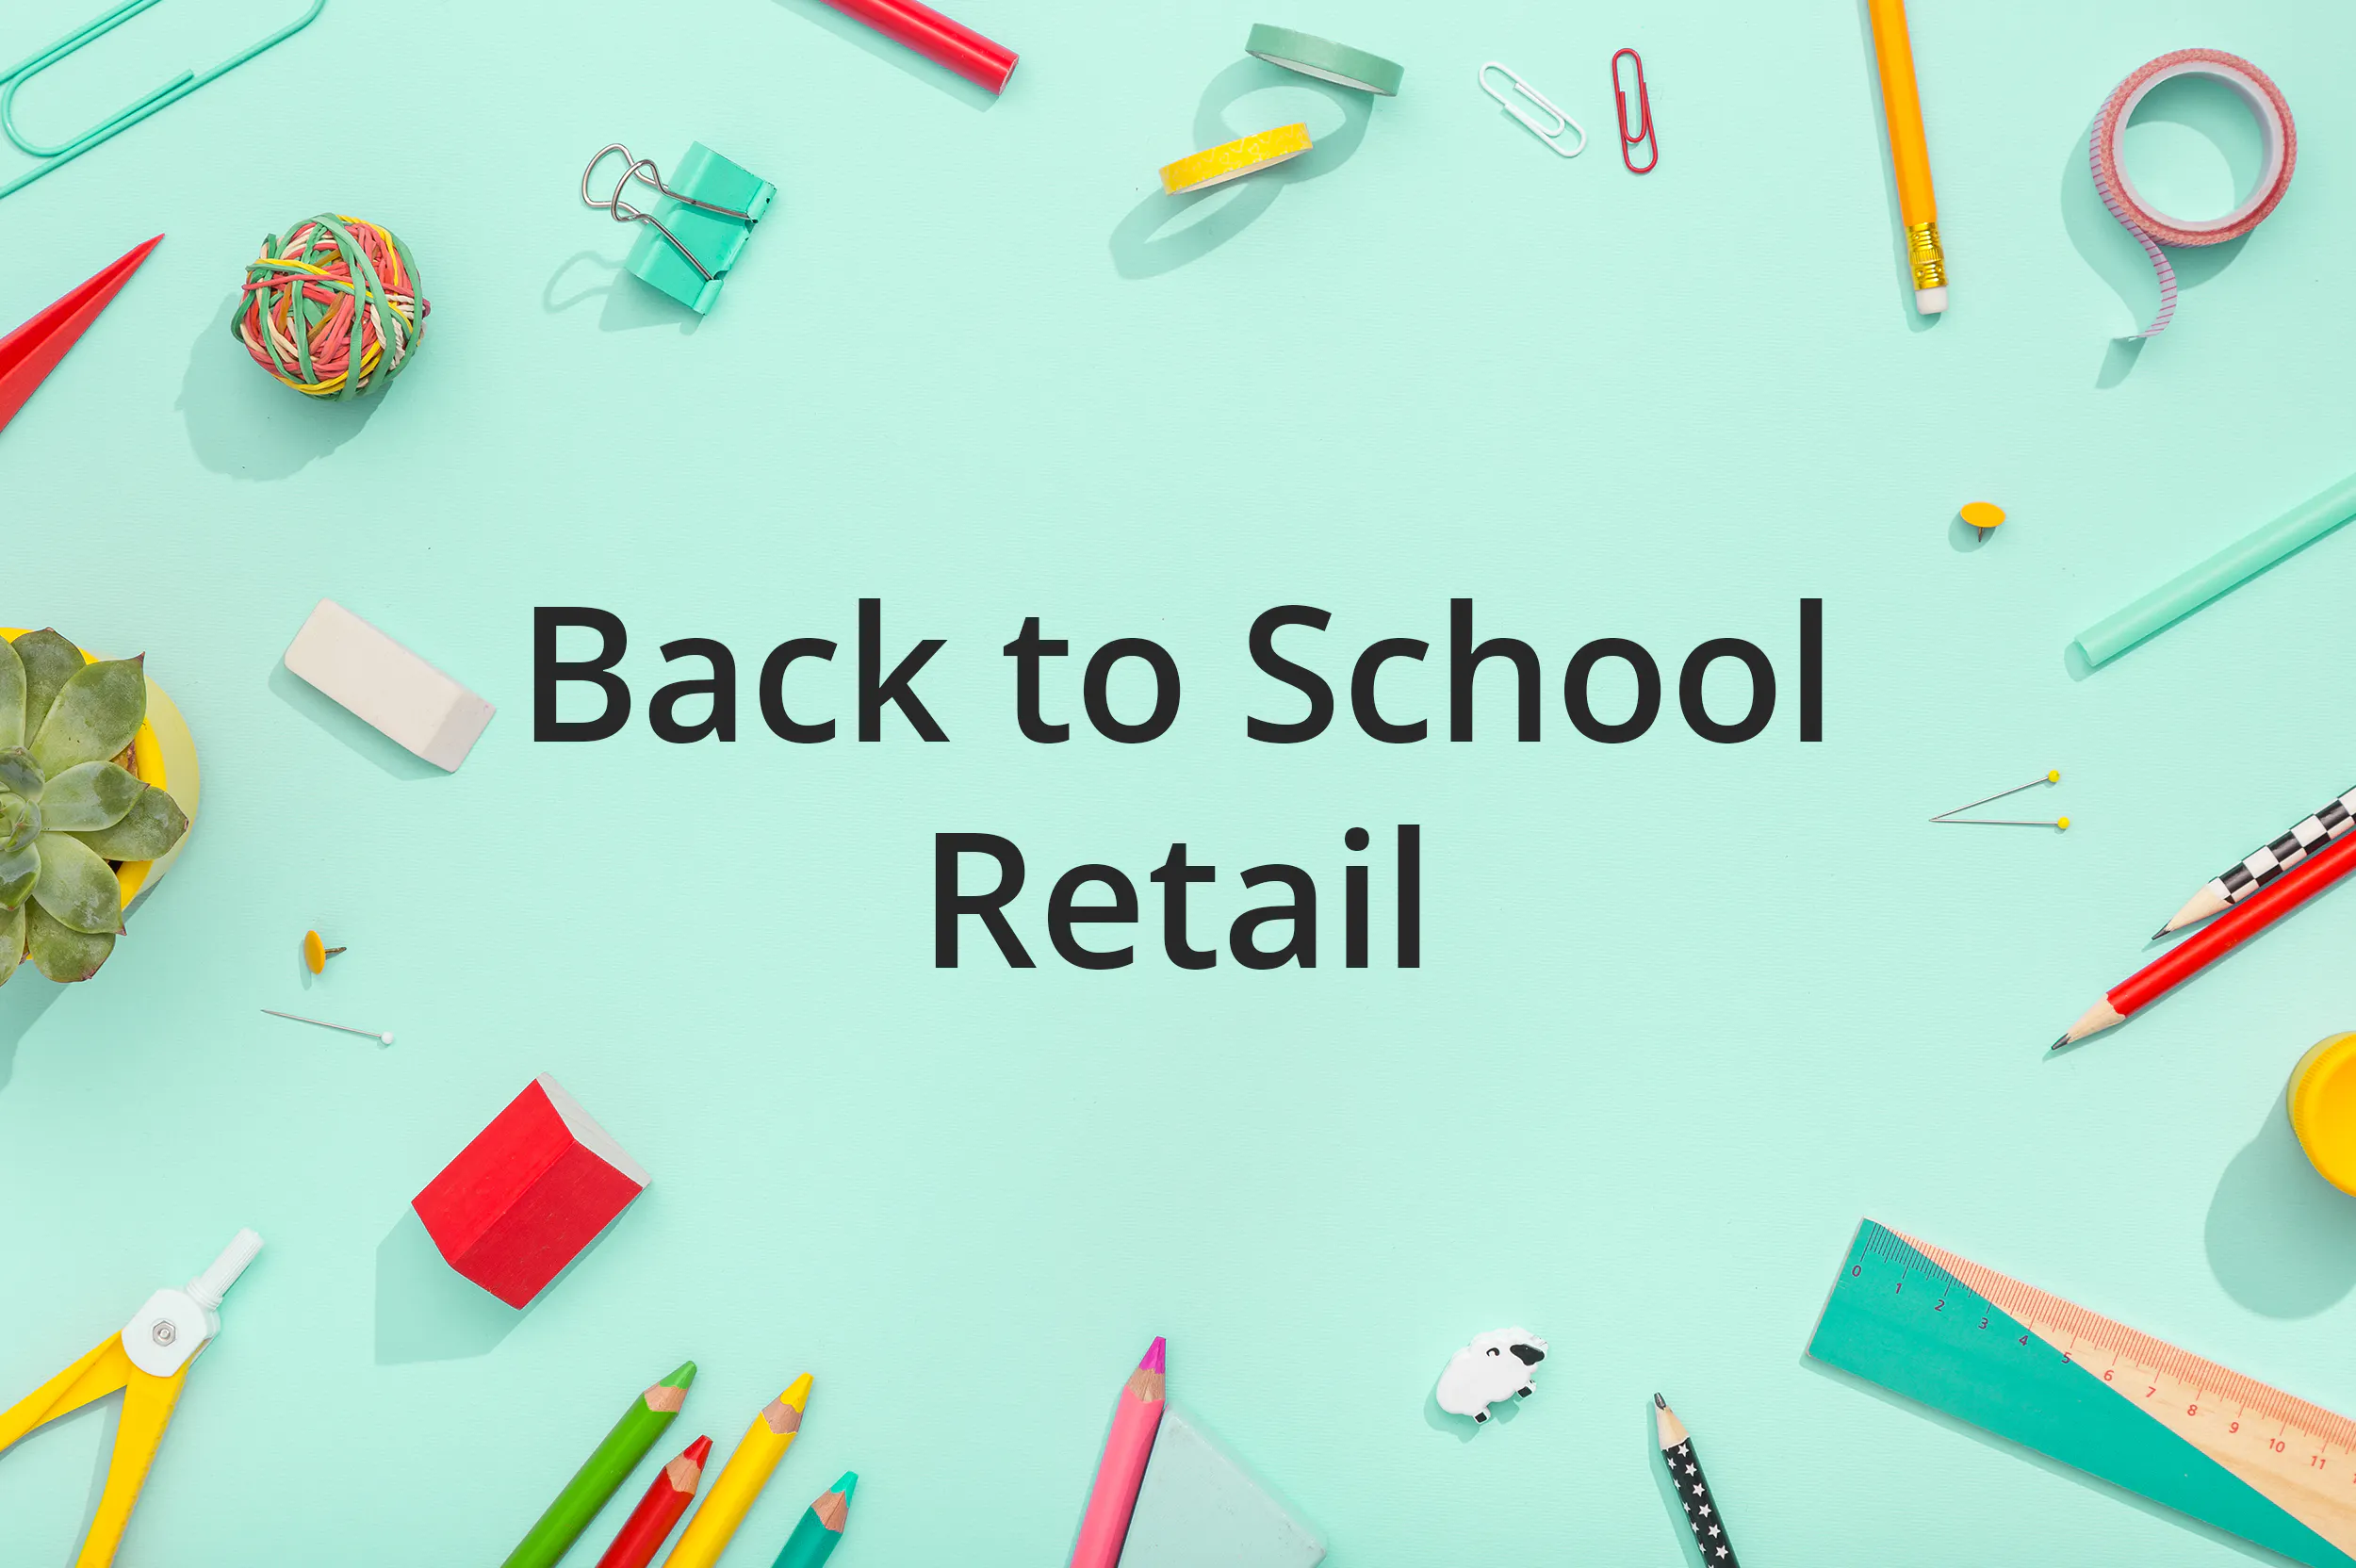 Für den Einzelhandel zum Schulanfang tendieren die Verbraucher zwischen erschwinglich und trendy.